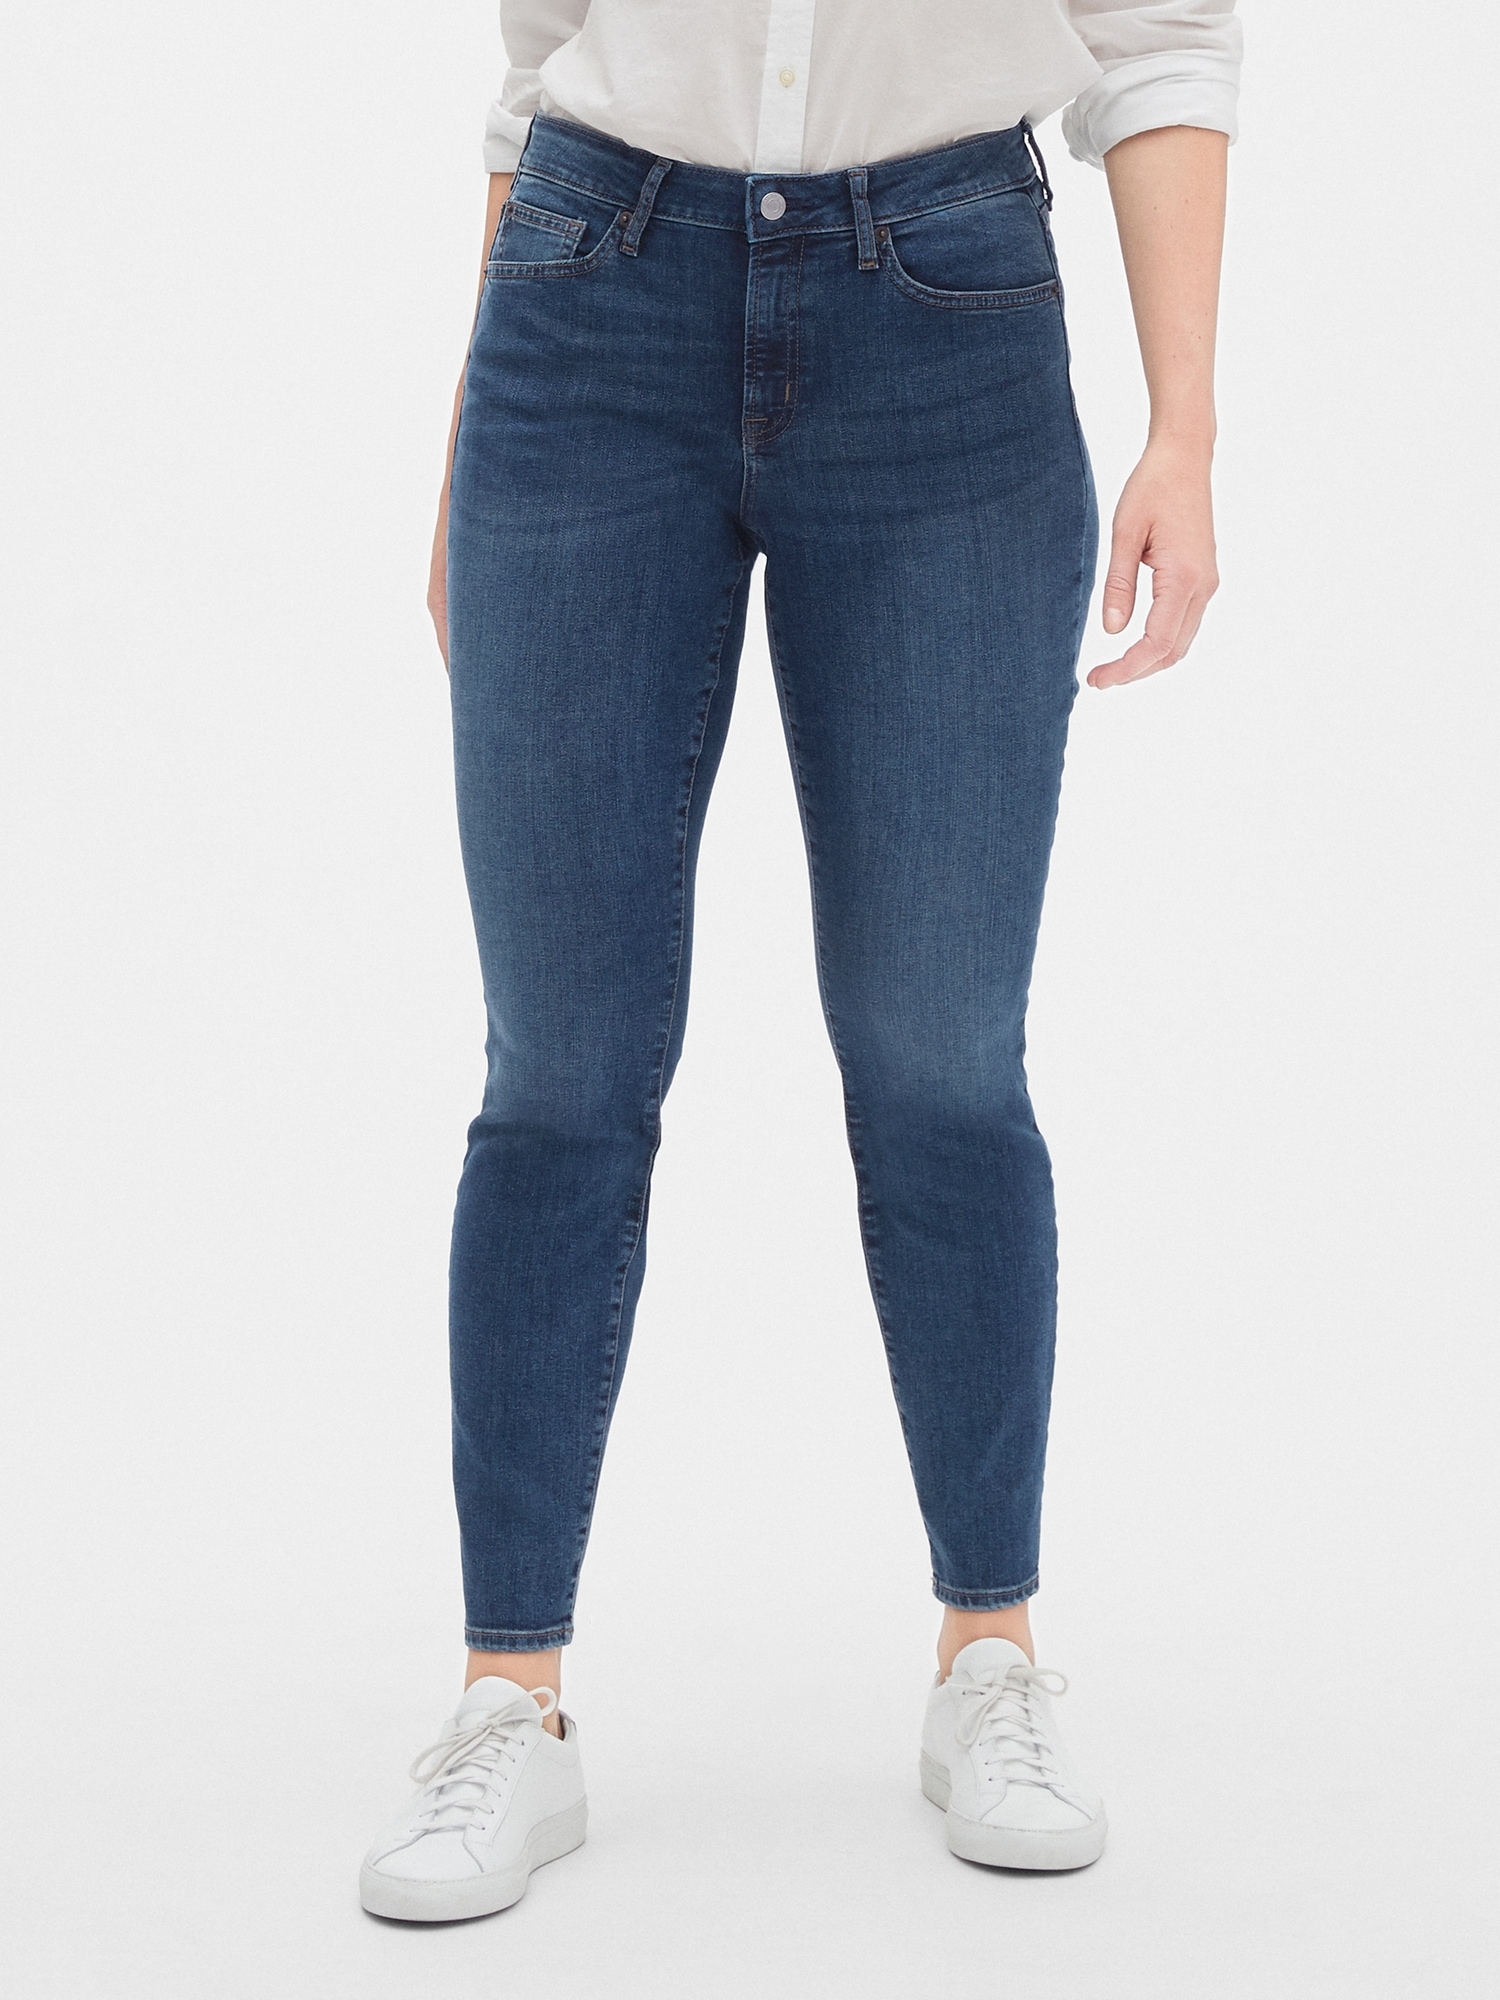 I de fleste tilfælde Atomisk motivet Mid Rise Curvy True Skinny Jeans | Gap